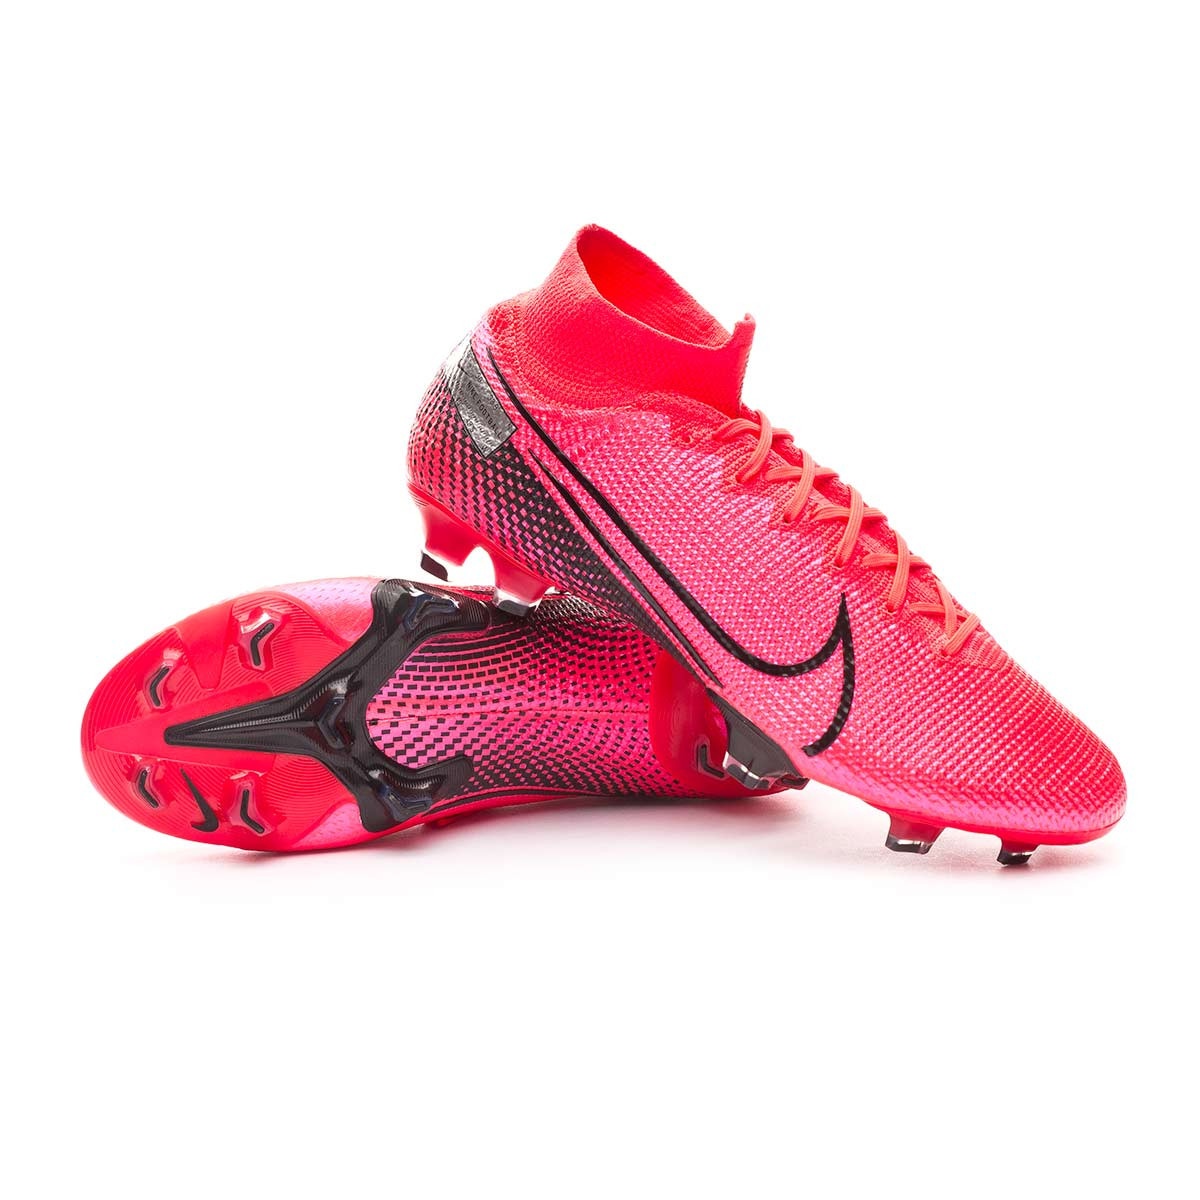 botas de futbol superfly